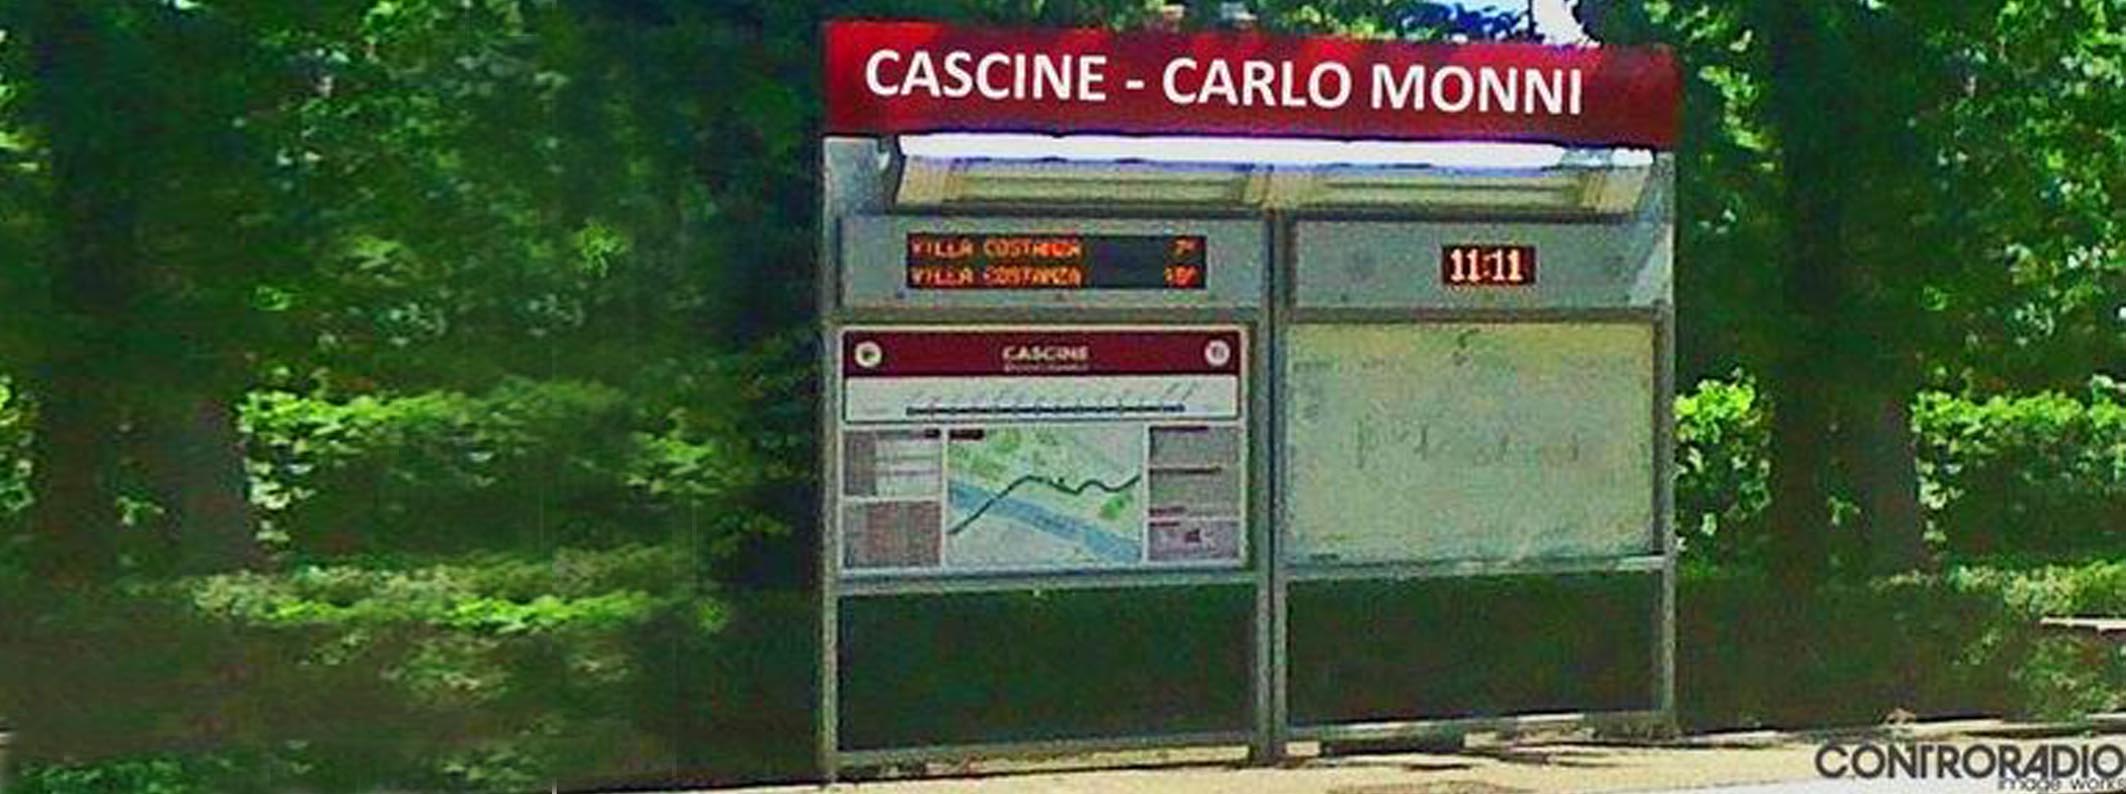 Firenze: sparatoria alle Cascine. Nessun ferito